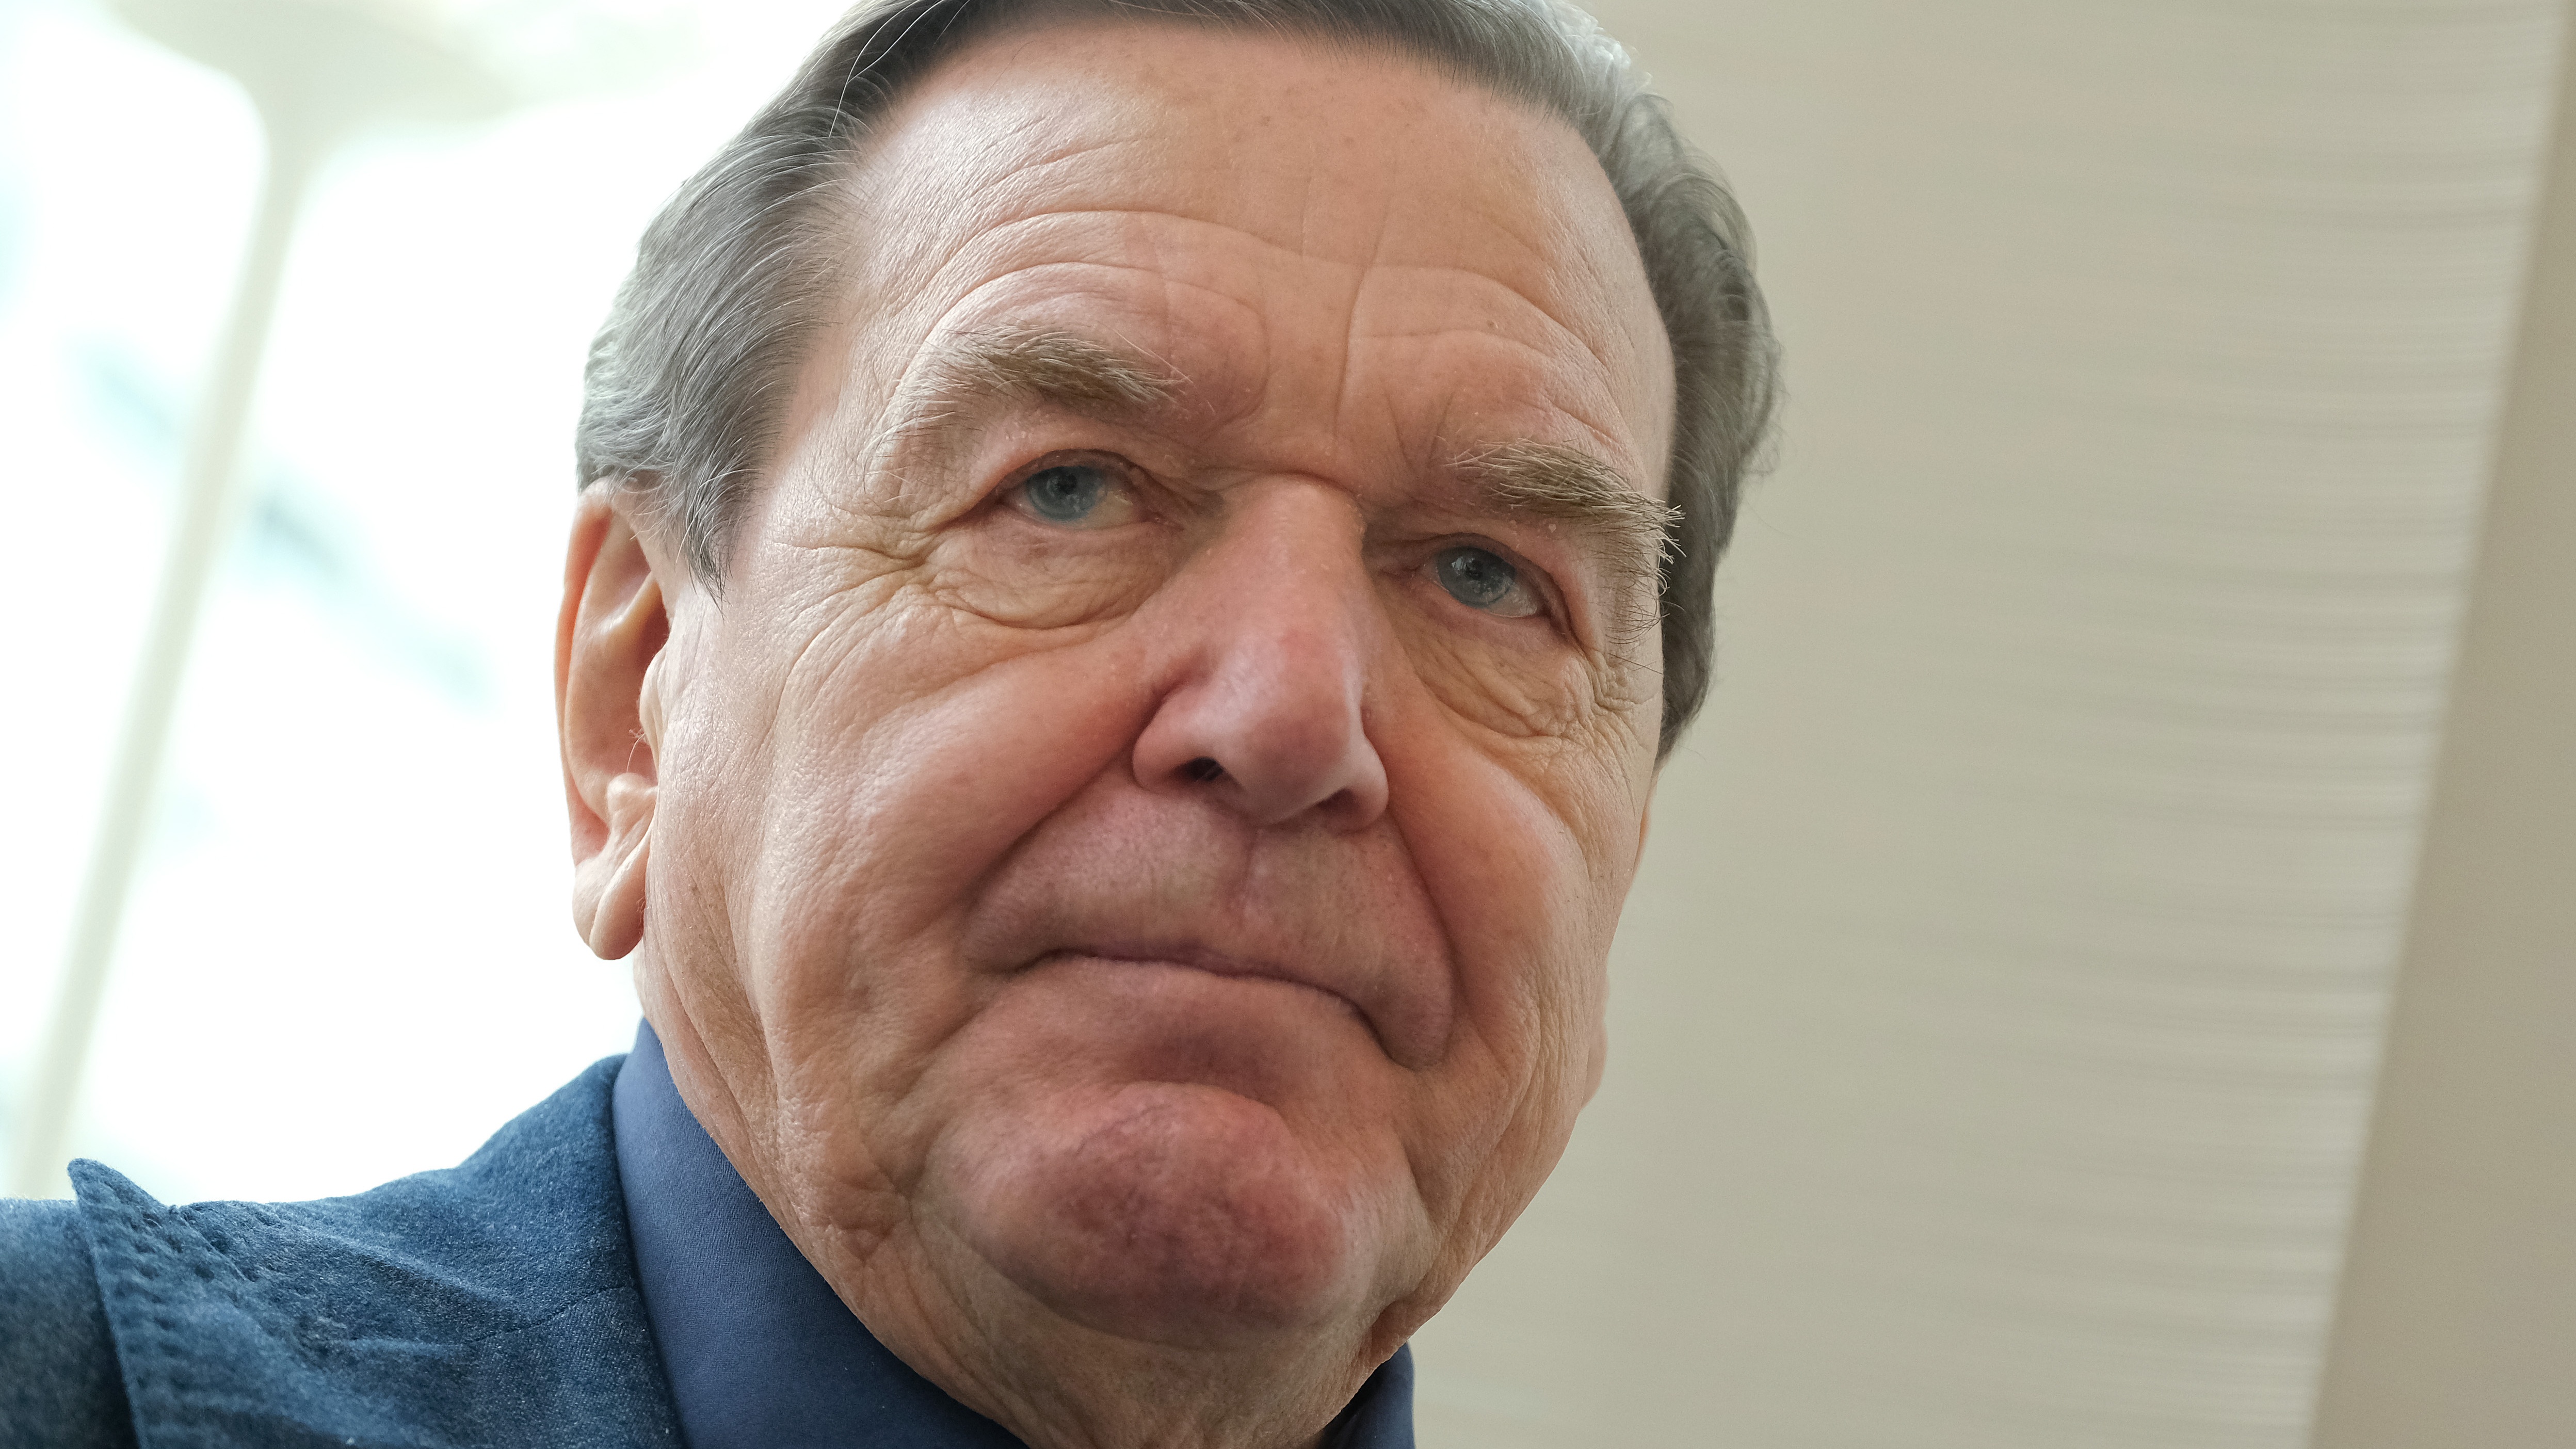 Gerhard Schröder addresses journalists in 2020